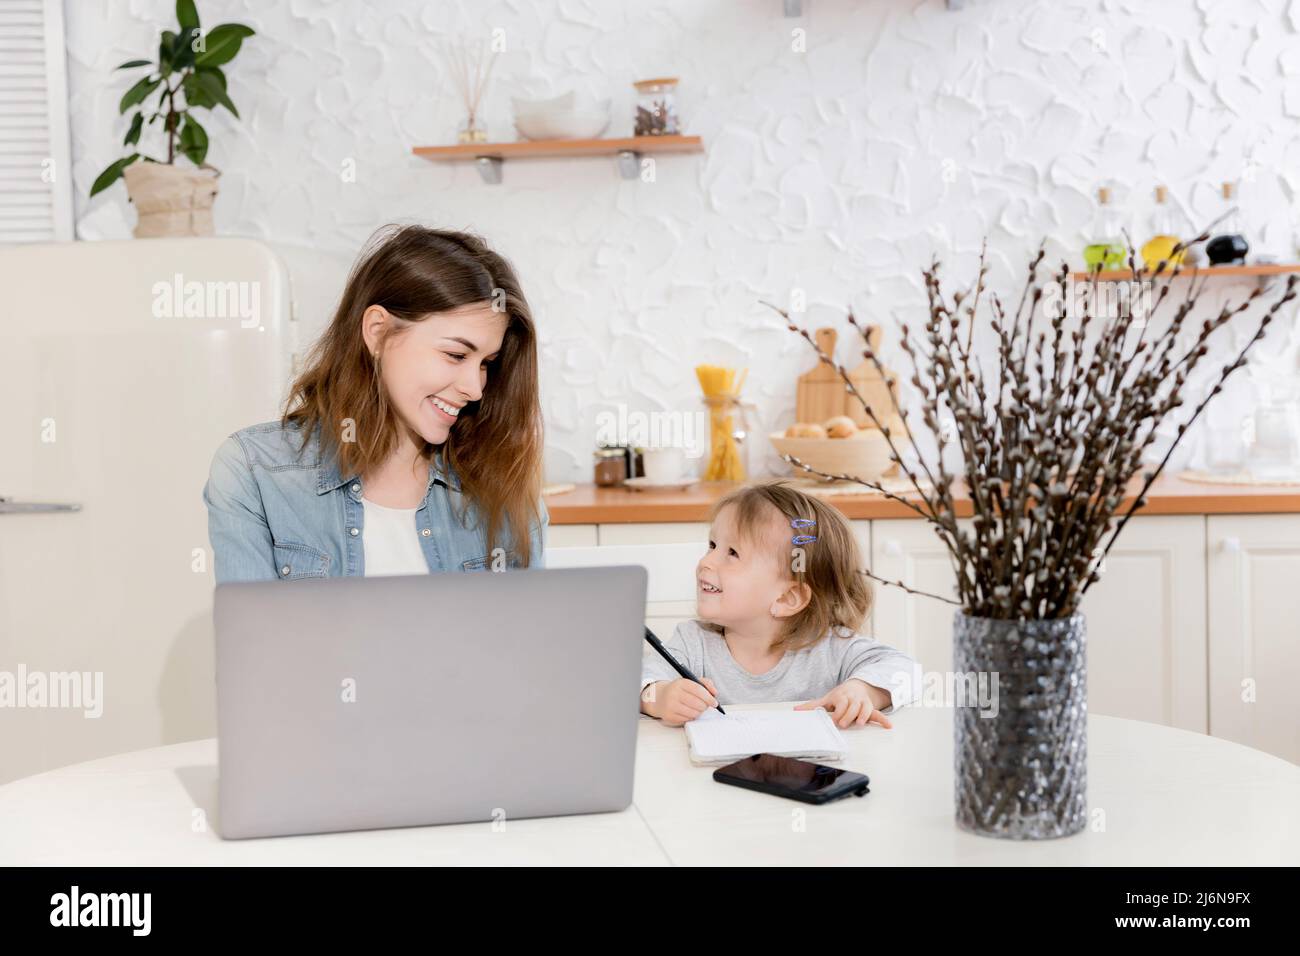 Jeune mère célibataire assise au bureau avec un enfant mignon, travaillant à distance de la maison. Jeune femme d'affaires en congé de maternité avec ordinateur portable Banque D'Images